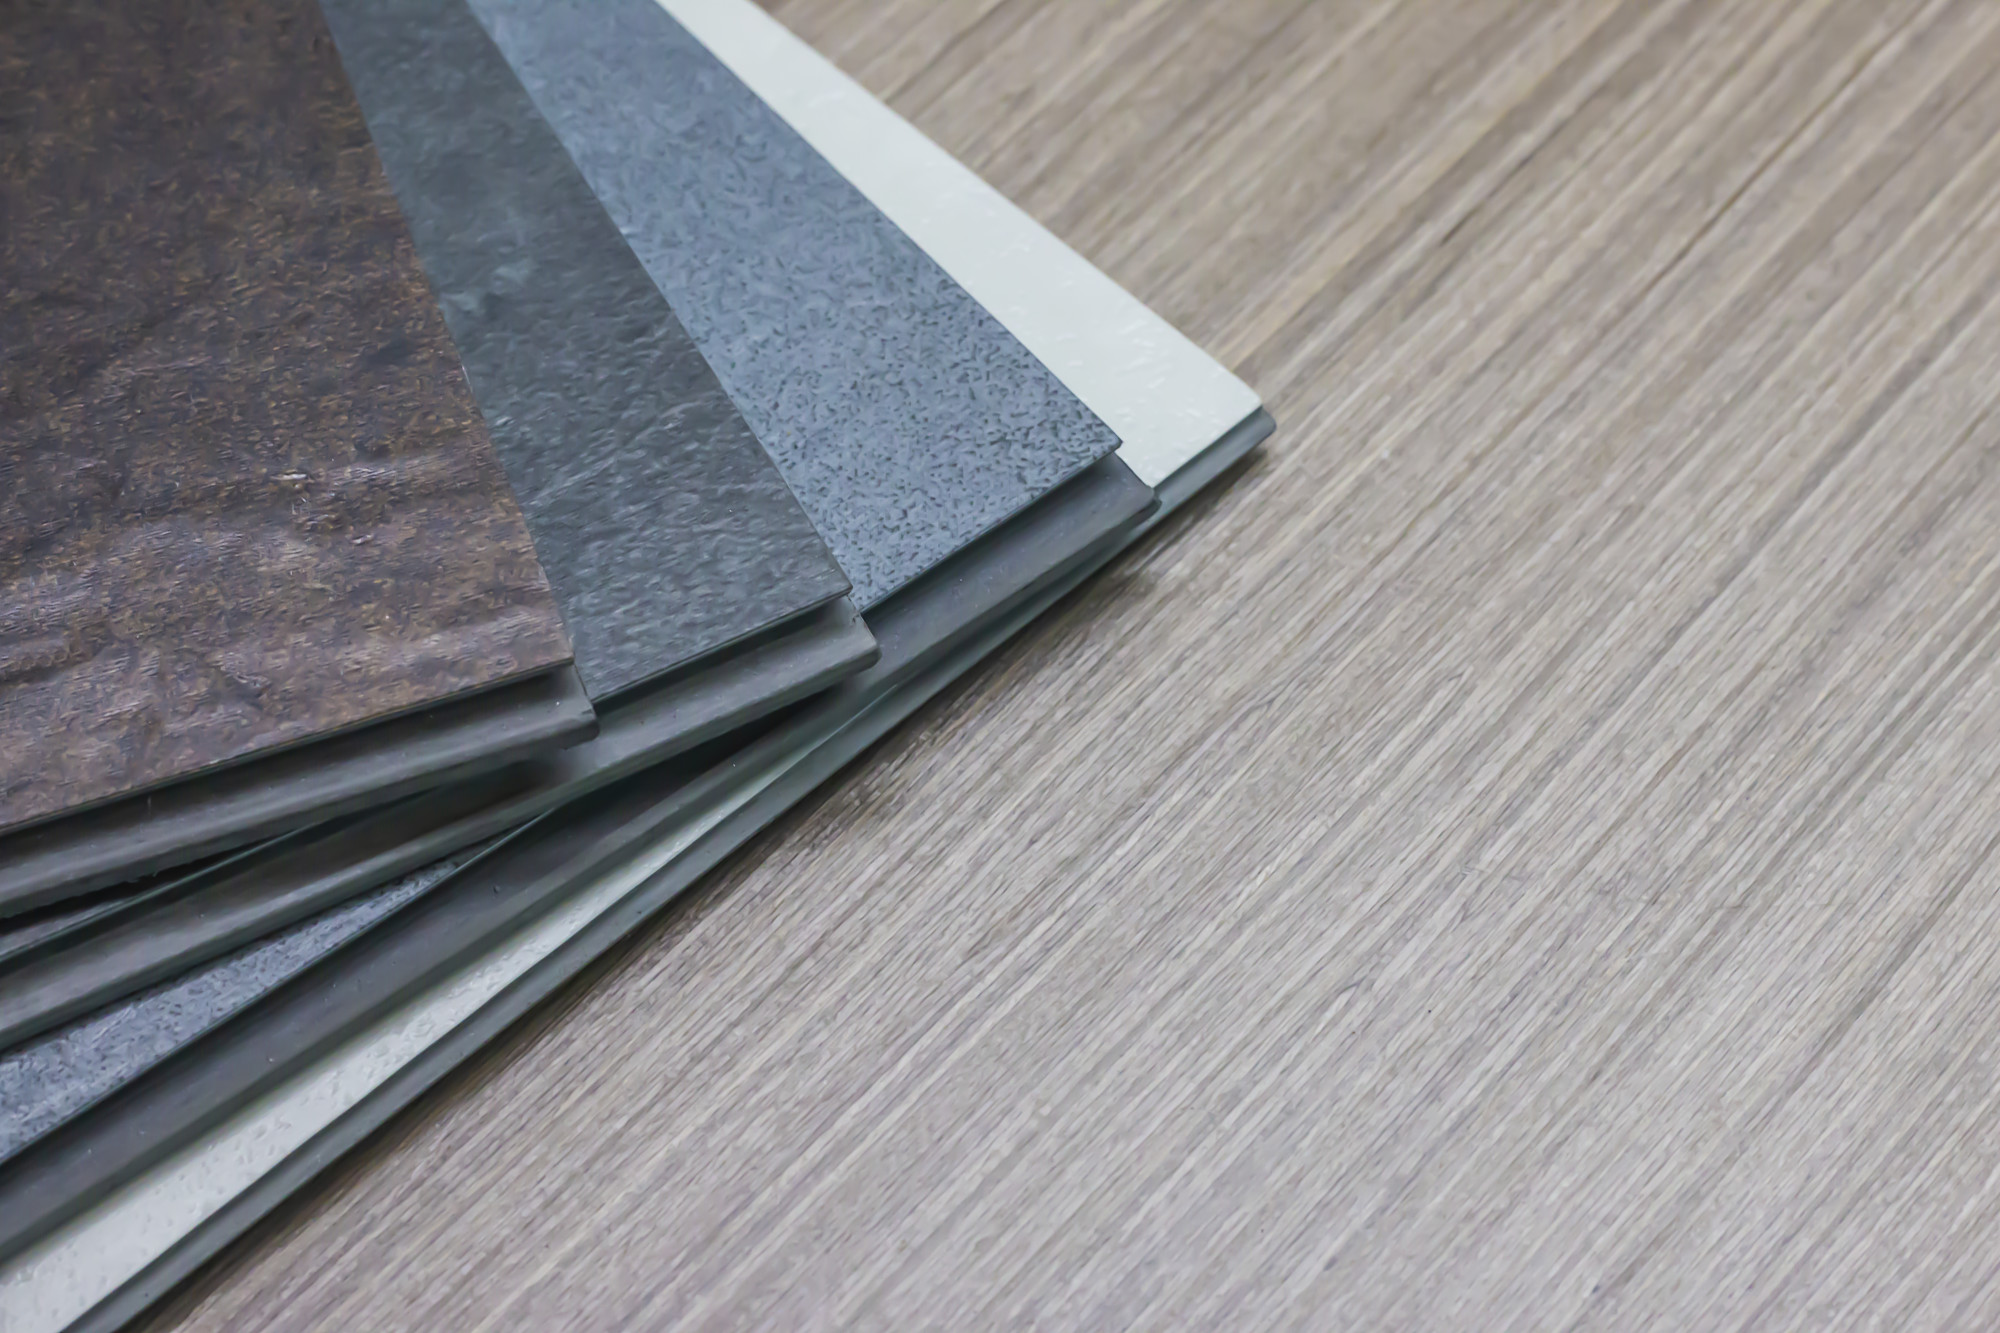 How To Keep Linoleum Floors Clean, How To Fix Tear In Linoleum Floor